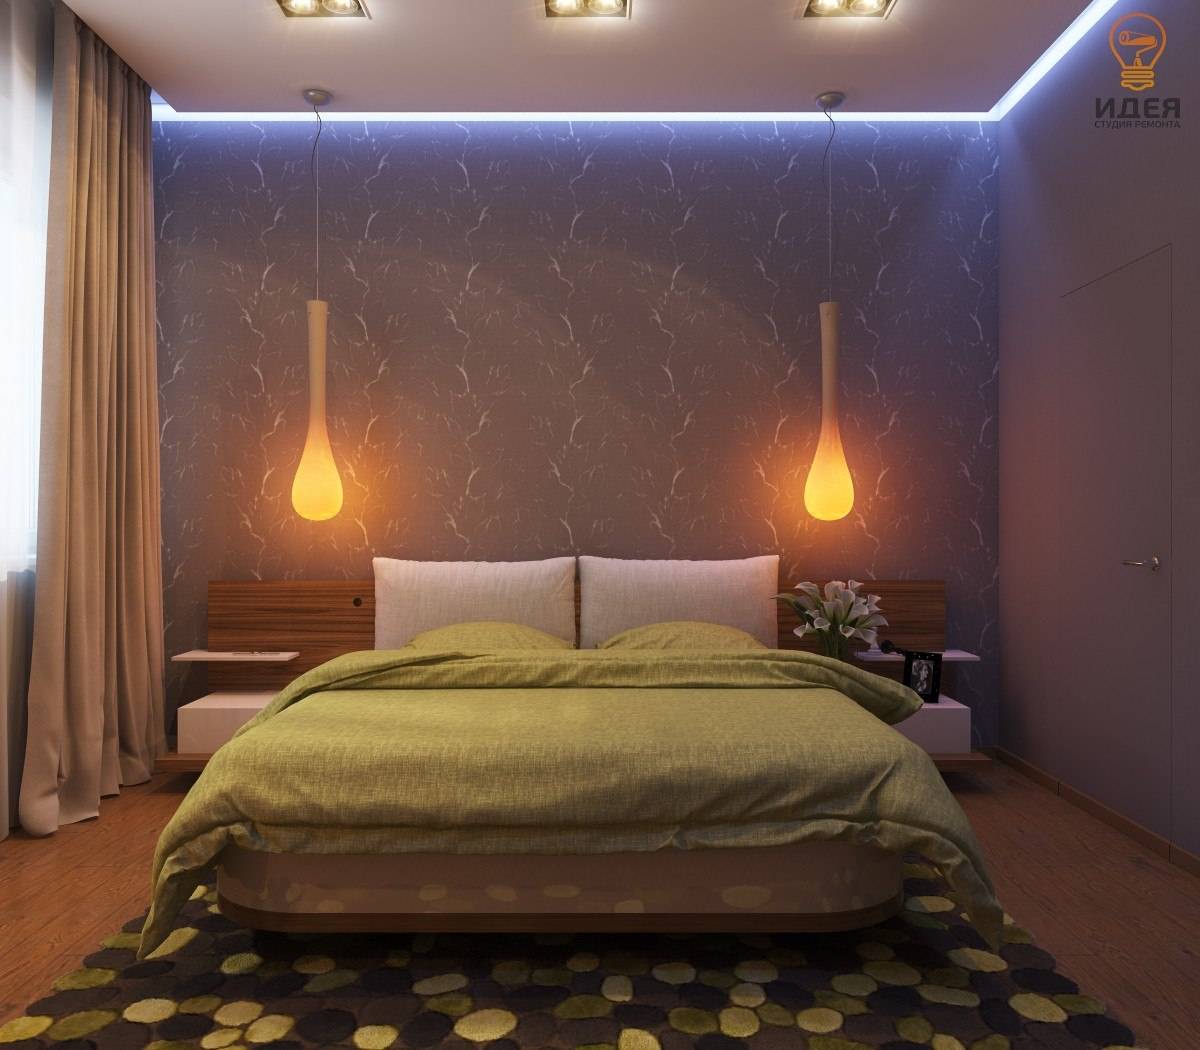 Освещение в спальне - принципы организации и обзор удачных проектов с фото дизайном